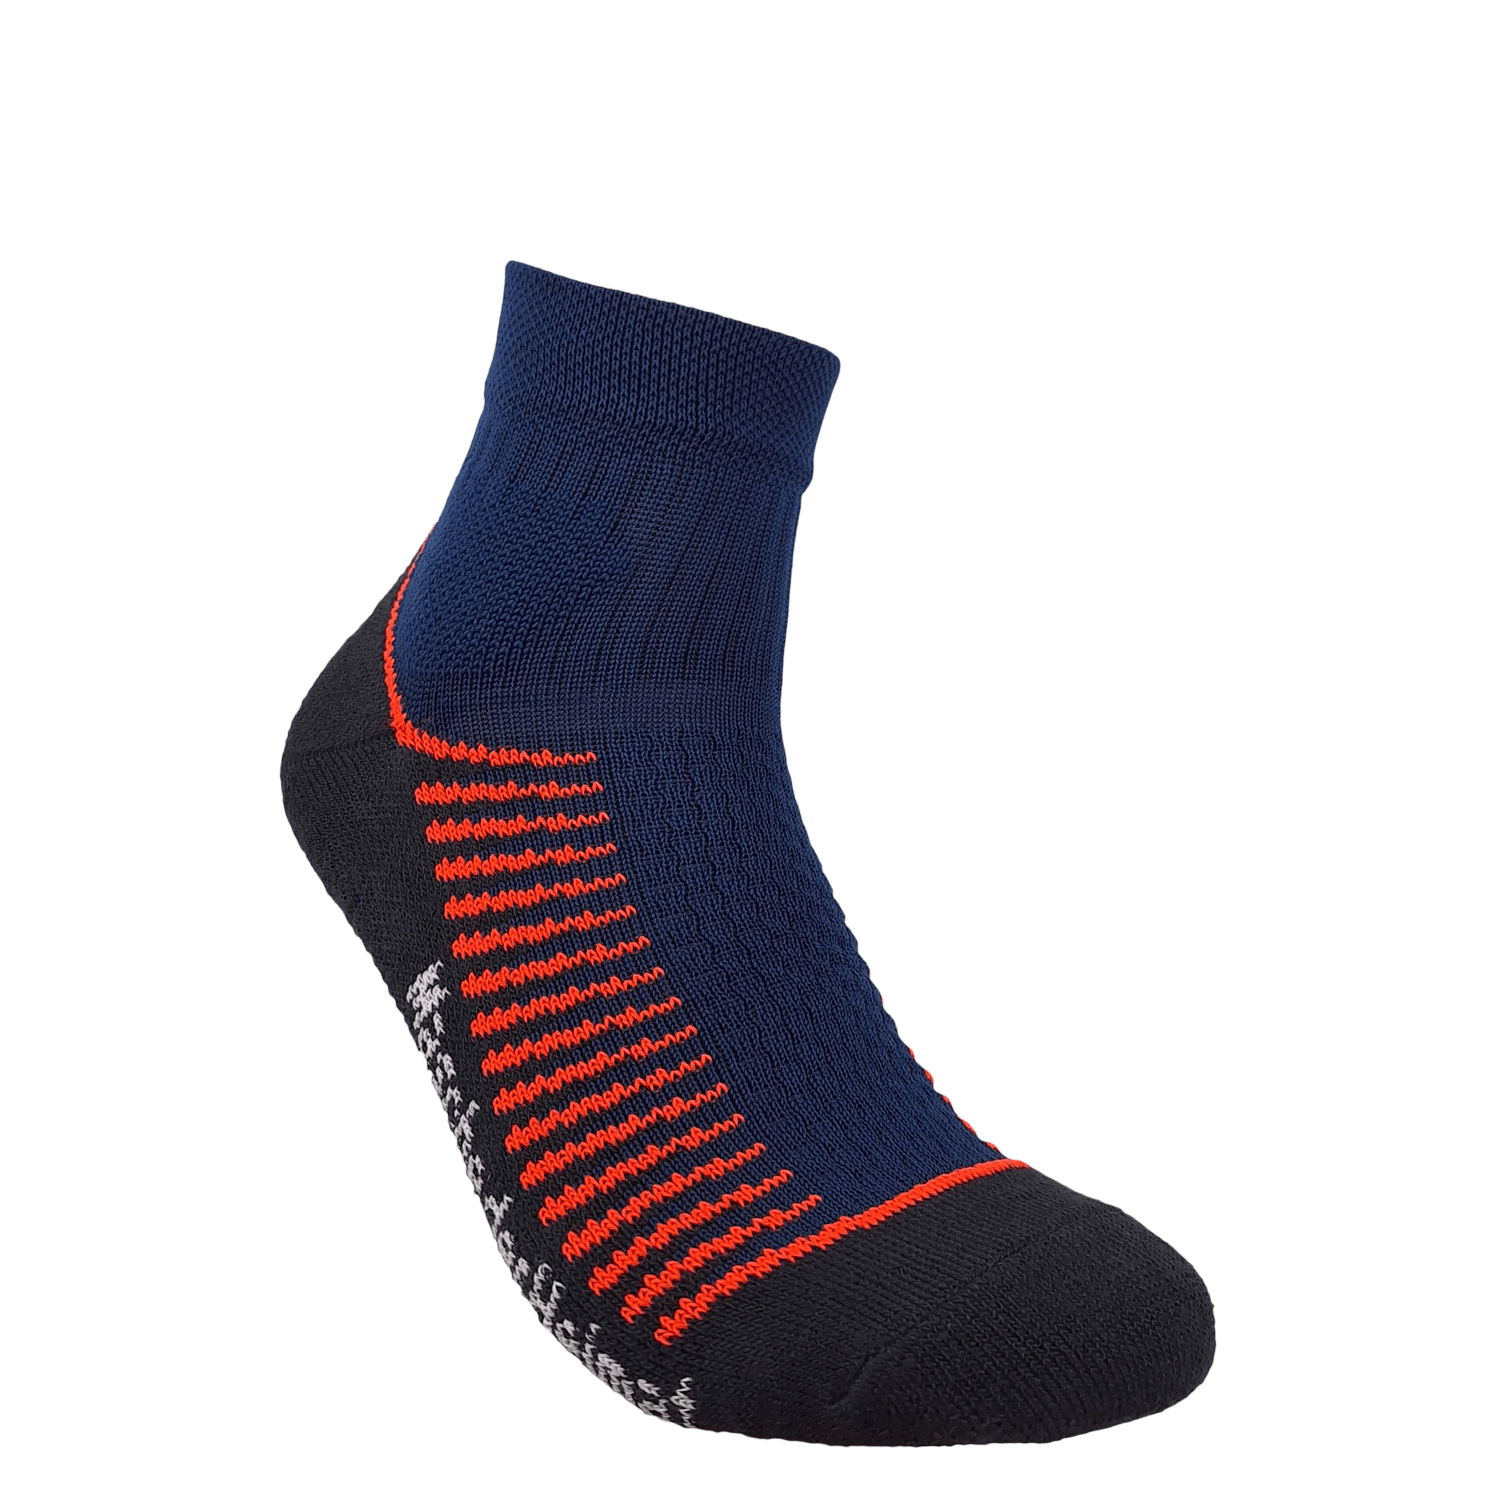 Allround-Socks marine orange, kurz, 35/38